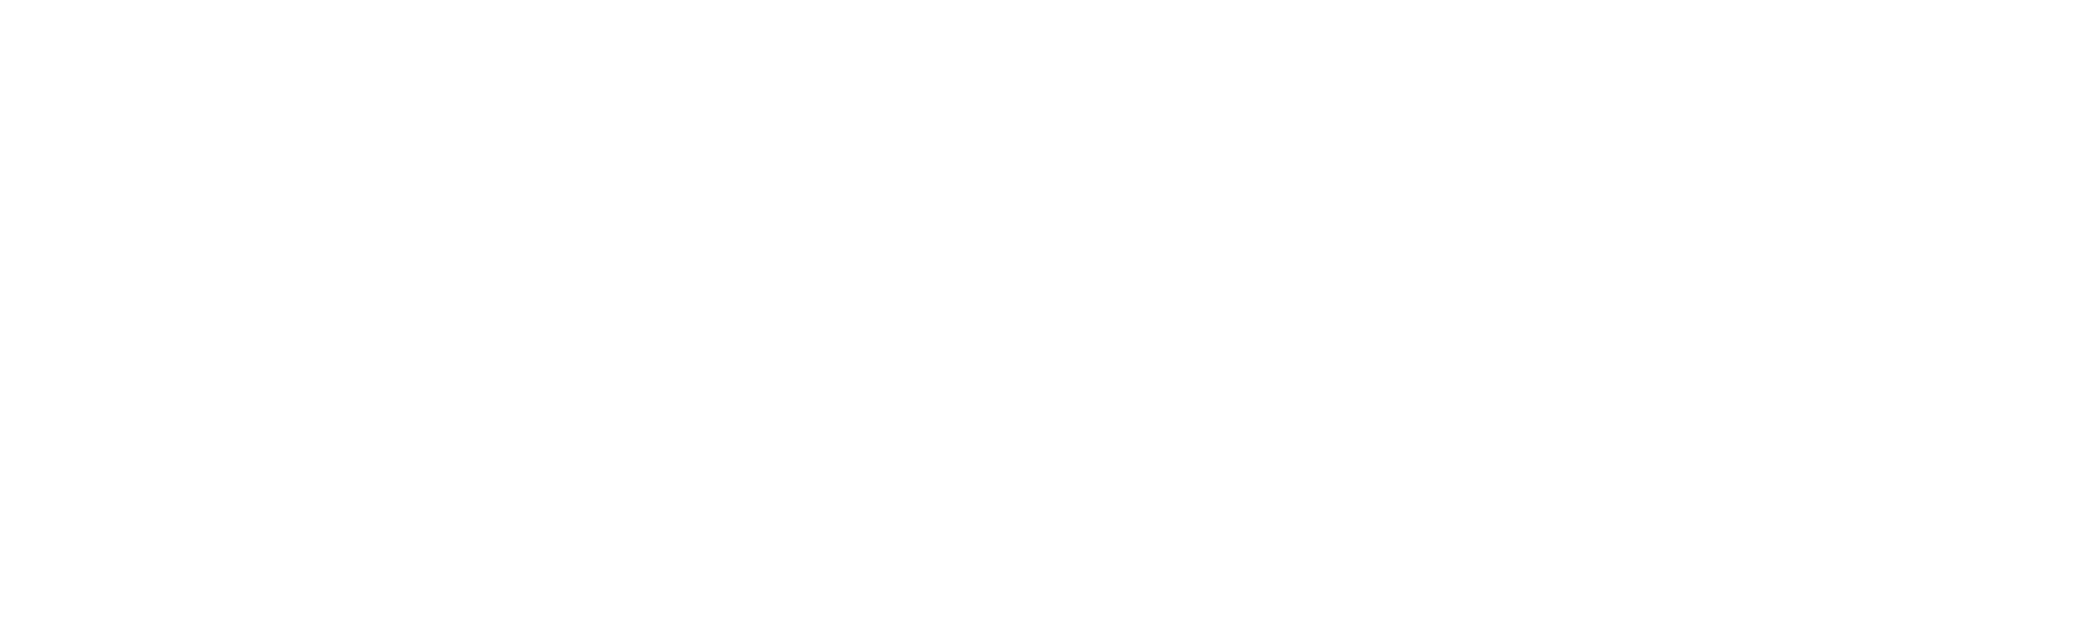 Members Code of Conduct logo